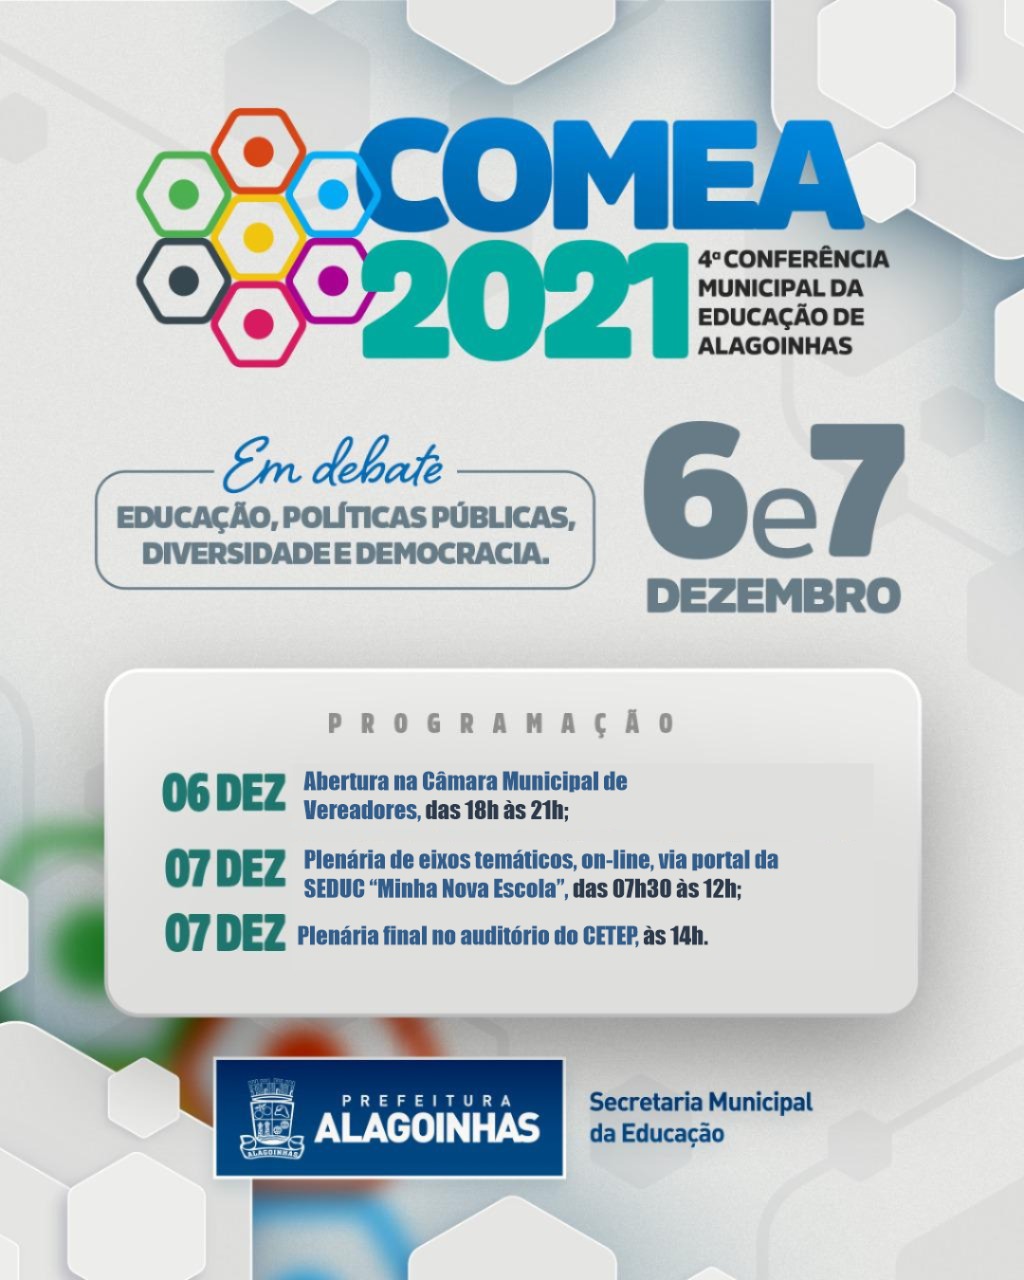 Prefeitura de Alagoinhas vai realizar a 4ª Conferência Municipal da Educação; inscrições vão até sexta (03)